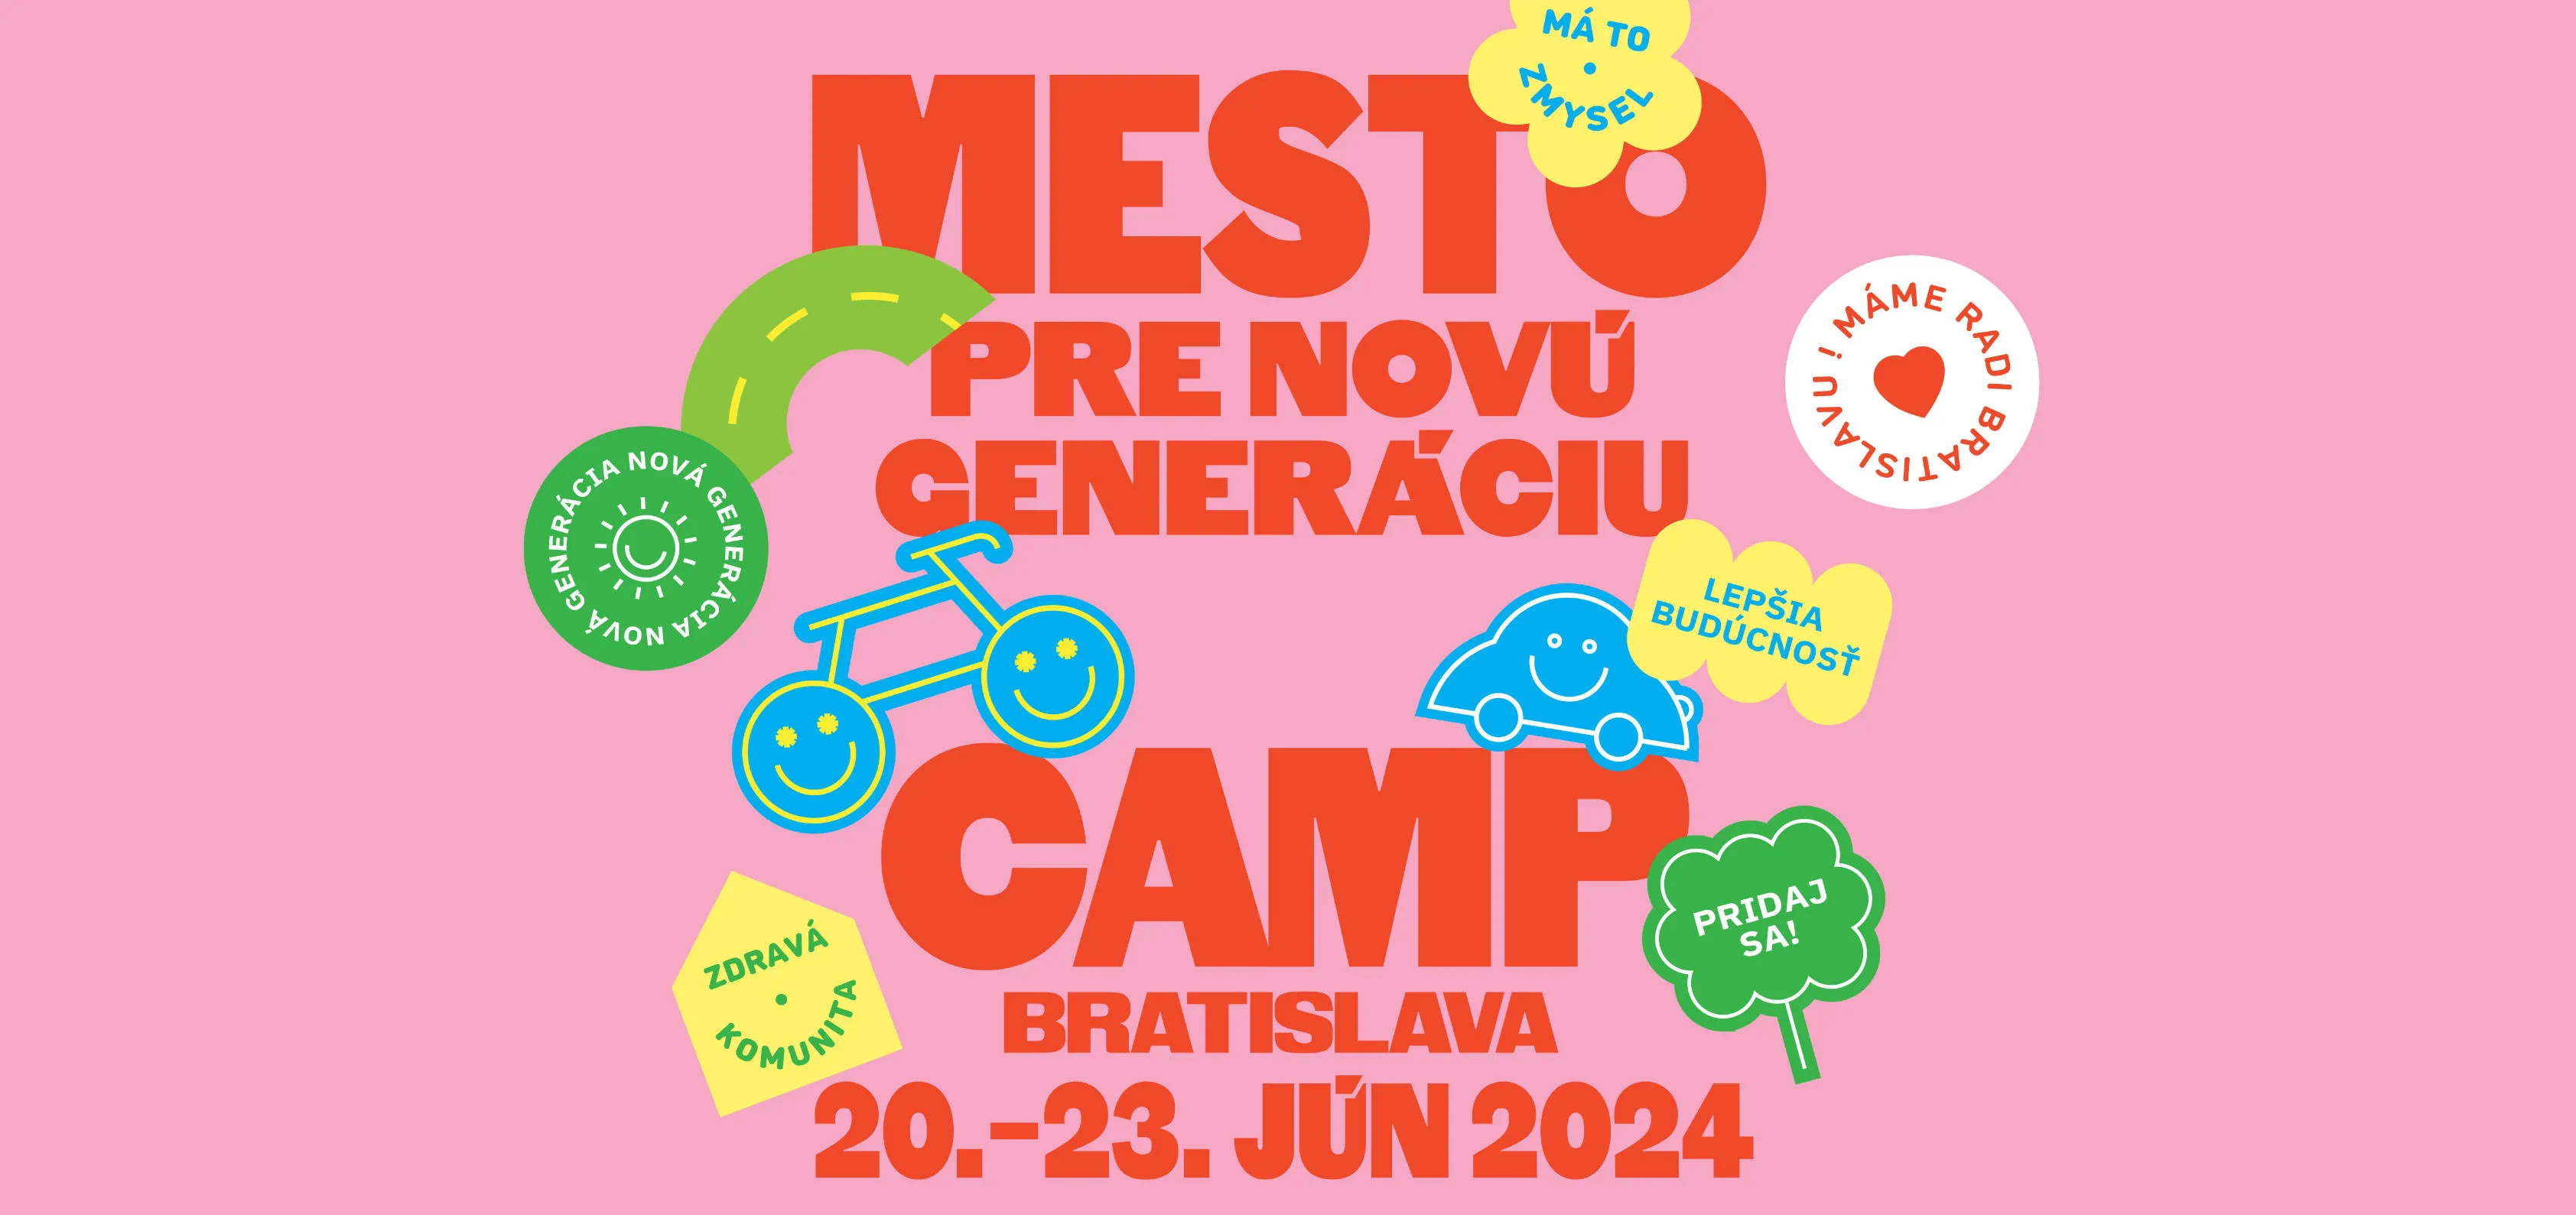 Camp Bratislava